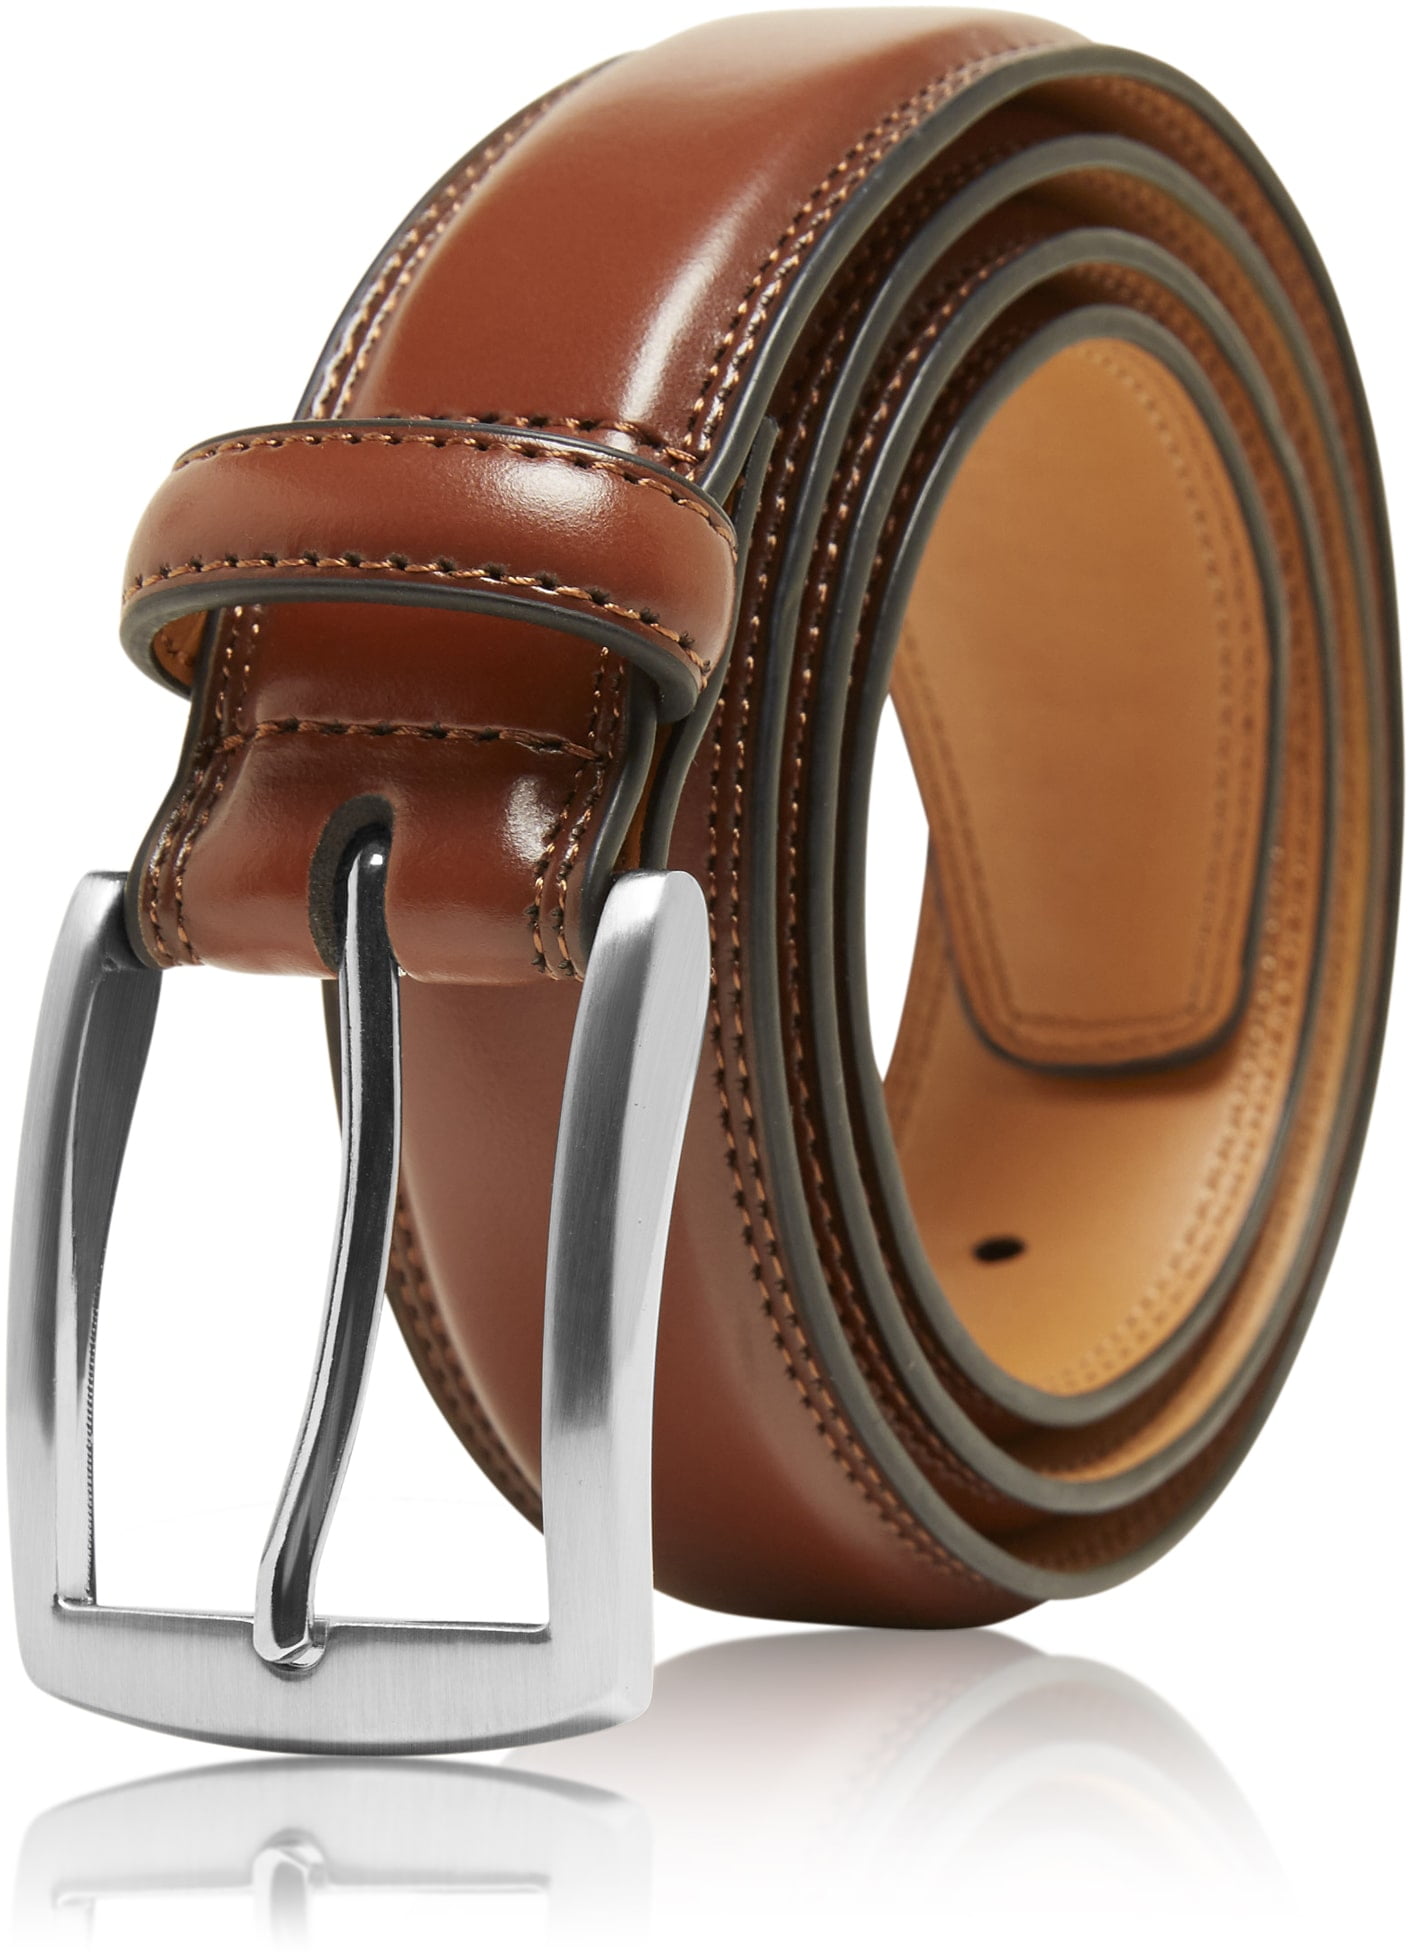 Genuine Leather Dress Belts For Men - Mens Belt For Suits, Jeans